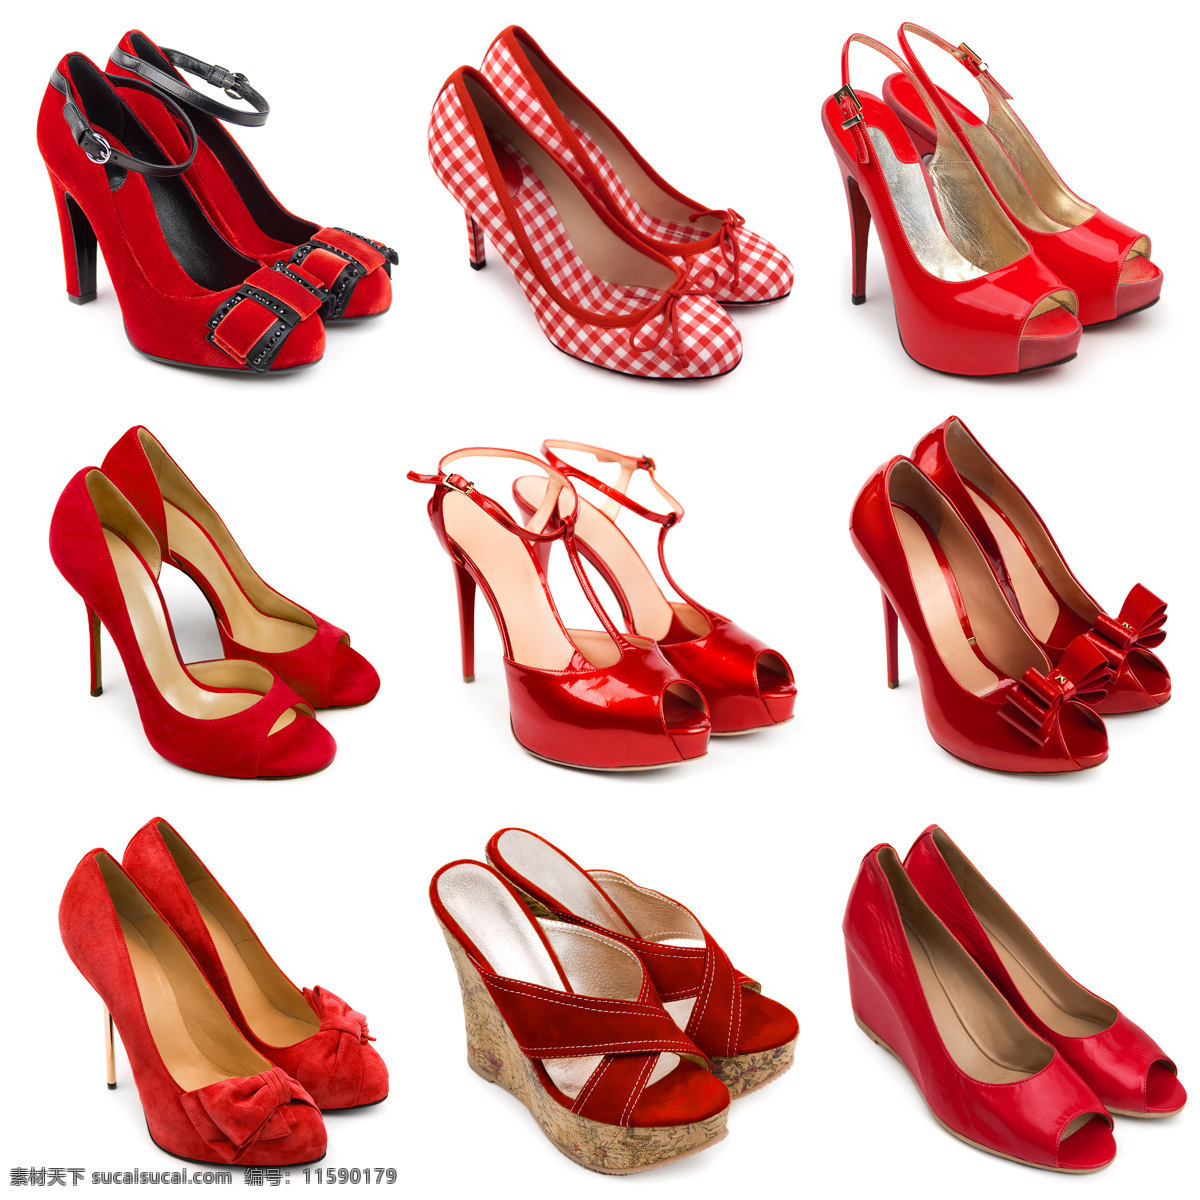 各种各样 红色 女式 鞋 女鞋 凉鞋 平跟鞋 高跟鞋 皮鞋 鞋子 时尚 精美 纤细 女鞋摄影 时髦 珠宝服饰 生活百科